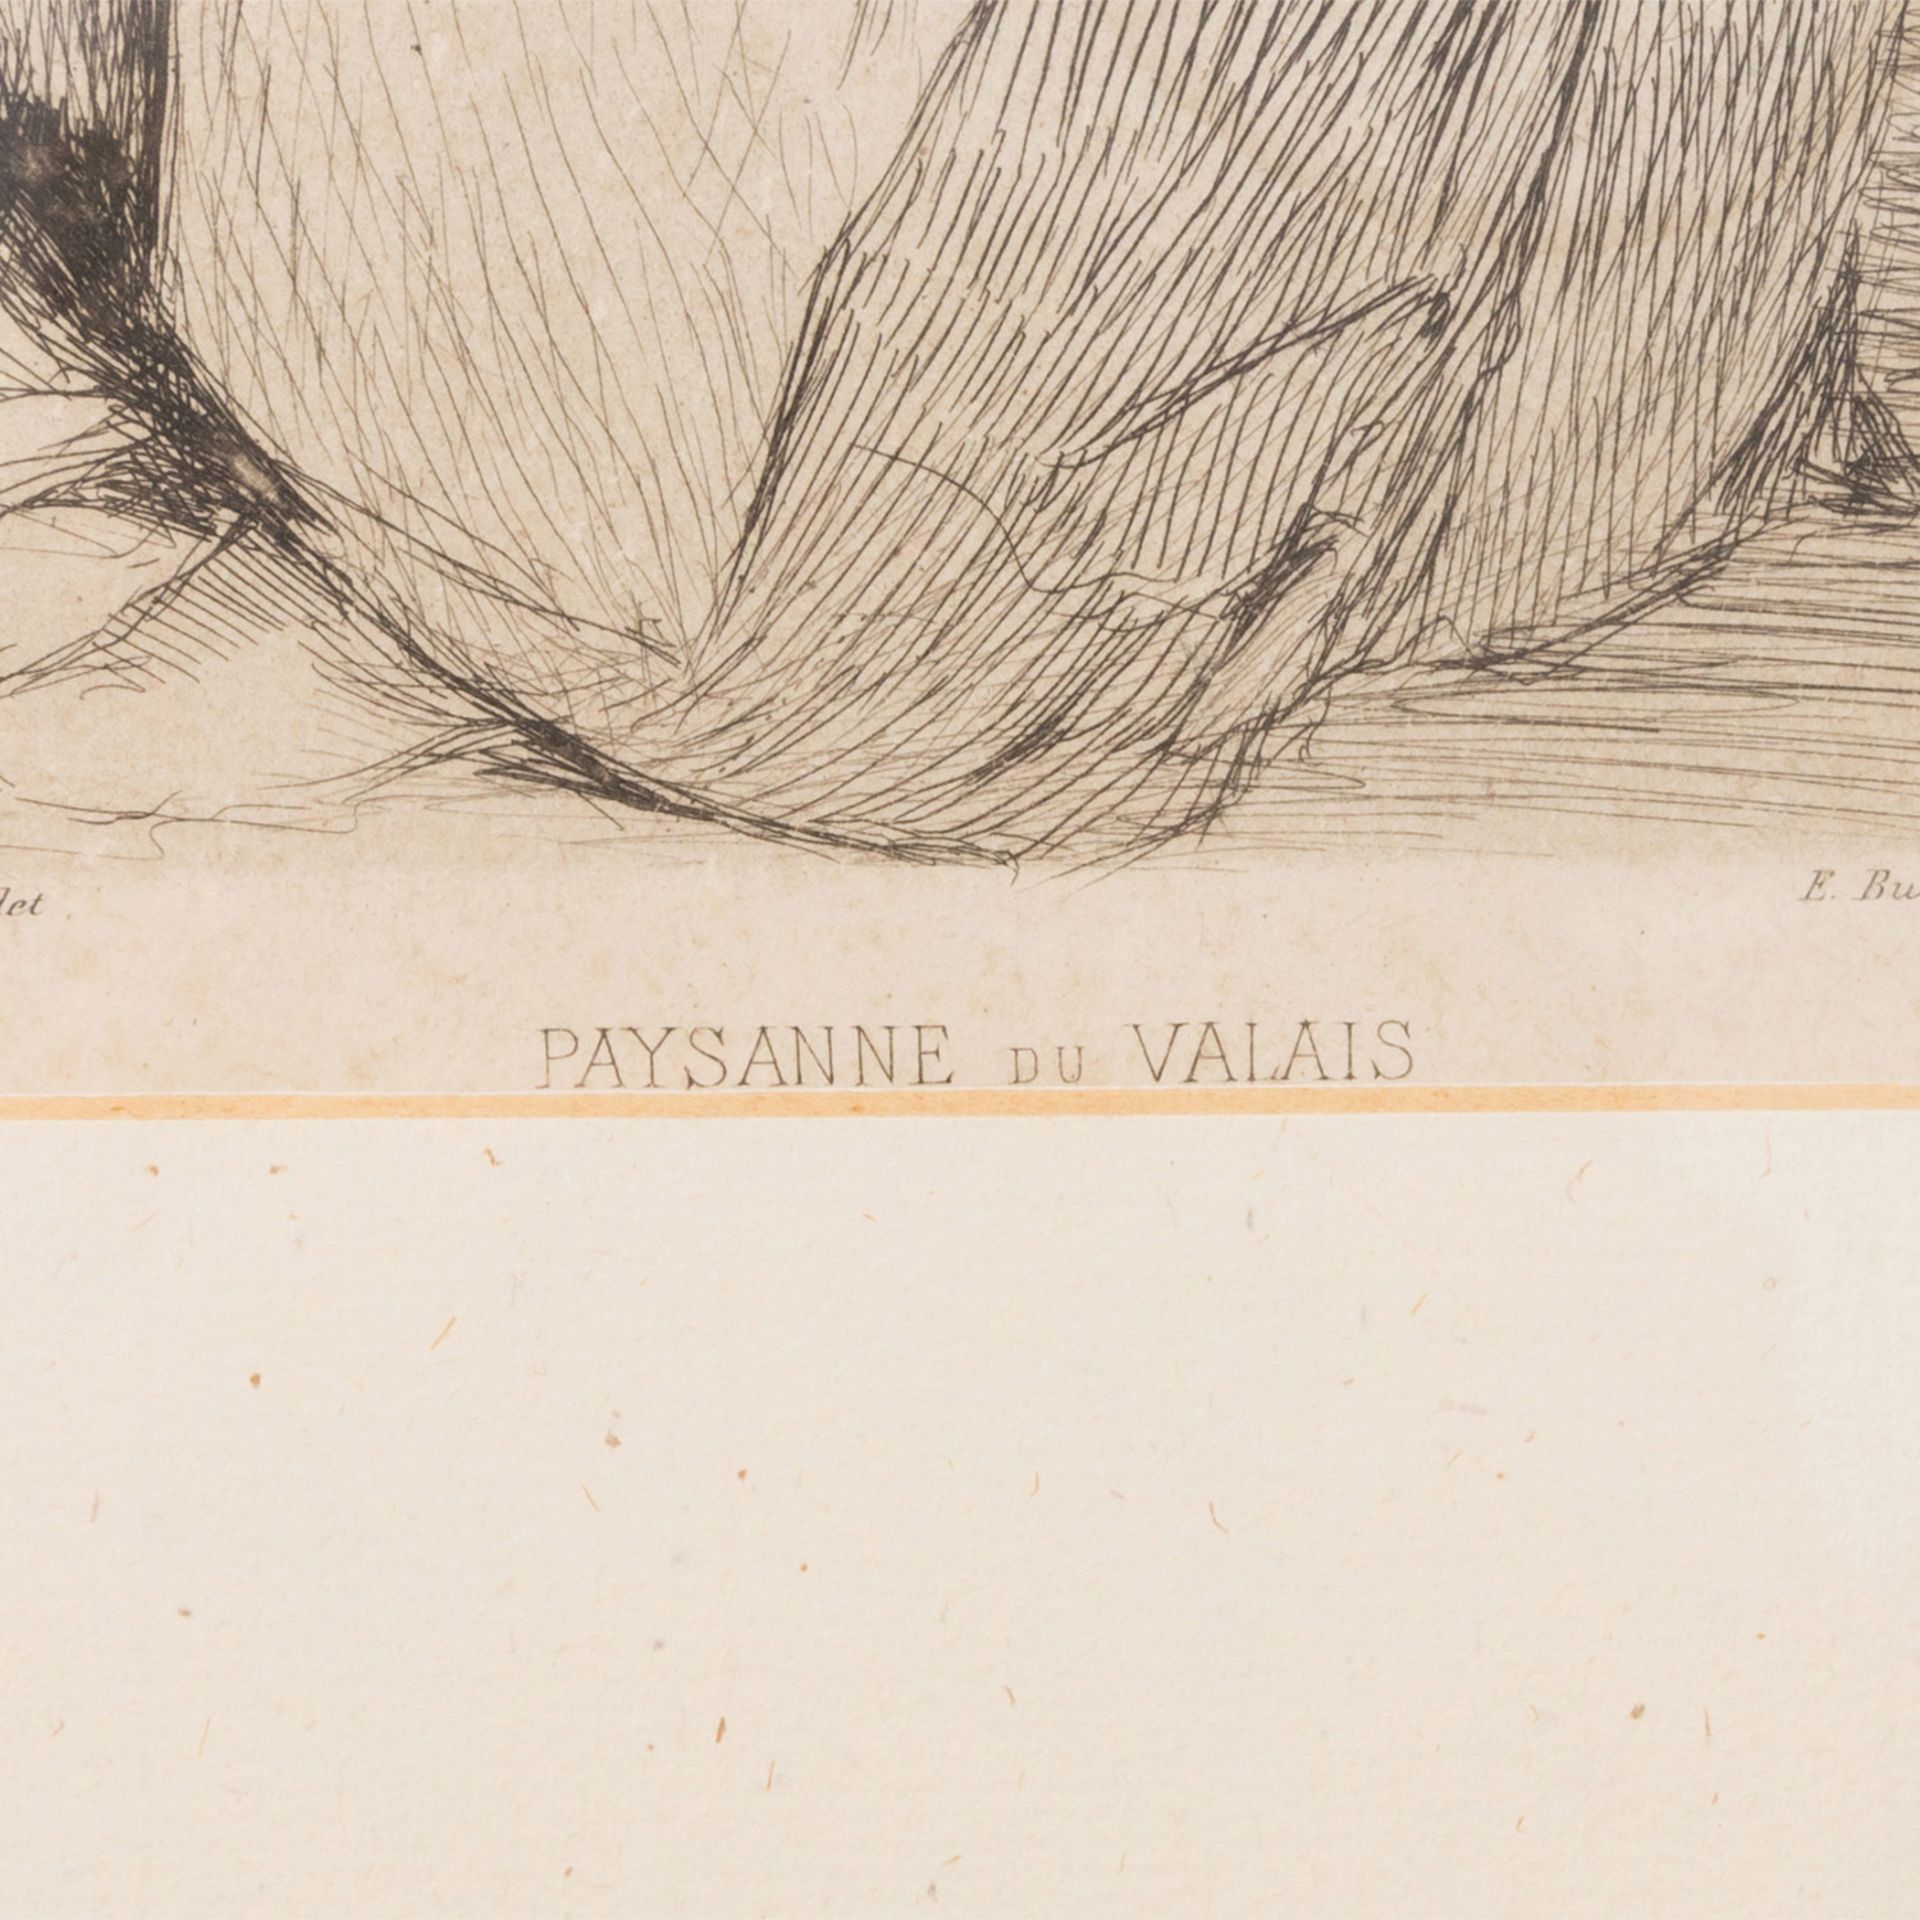 BURNAND, E., wohl Eugène (1850-1921, schweizer Maler u. Radierer), "Paysanne du Valais", - Bild 3 aus 4